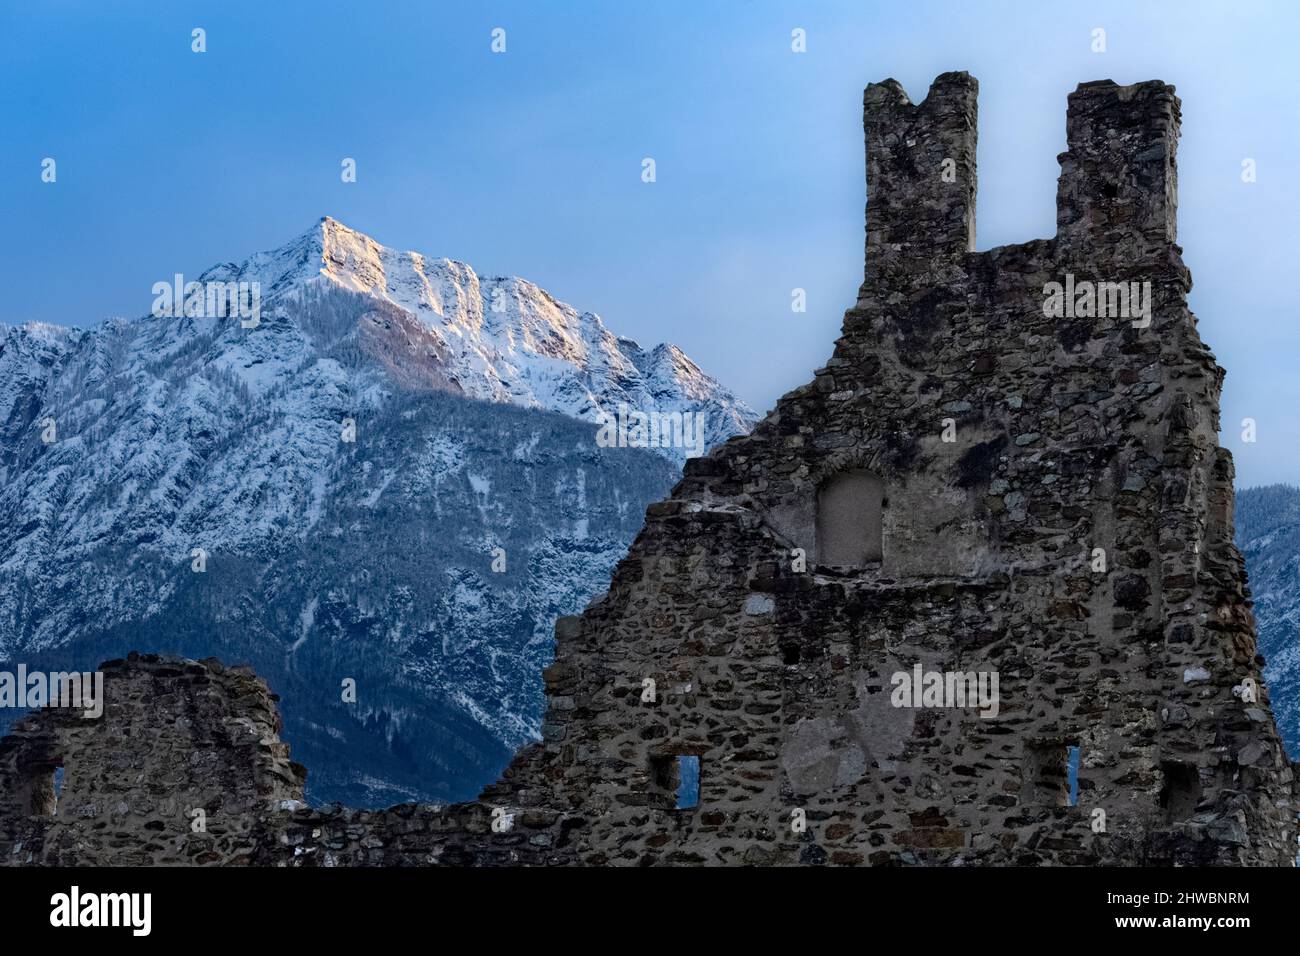 Les ruines crénelées du château de Selva et du mont Cima Vezzena en hiver. Levico terme, province de Trento, Trentin-Haut-Adige, Italie, Europe. Banque D'Images